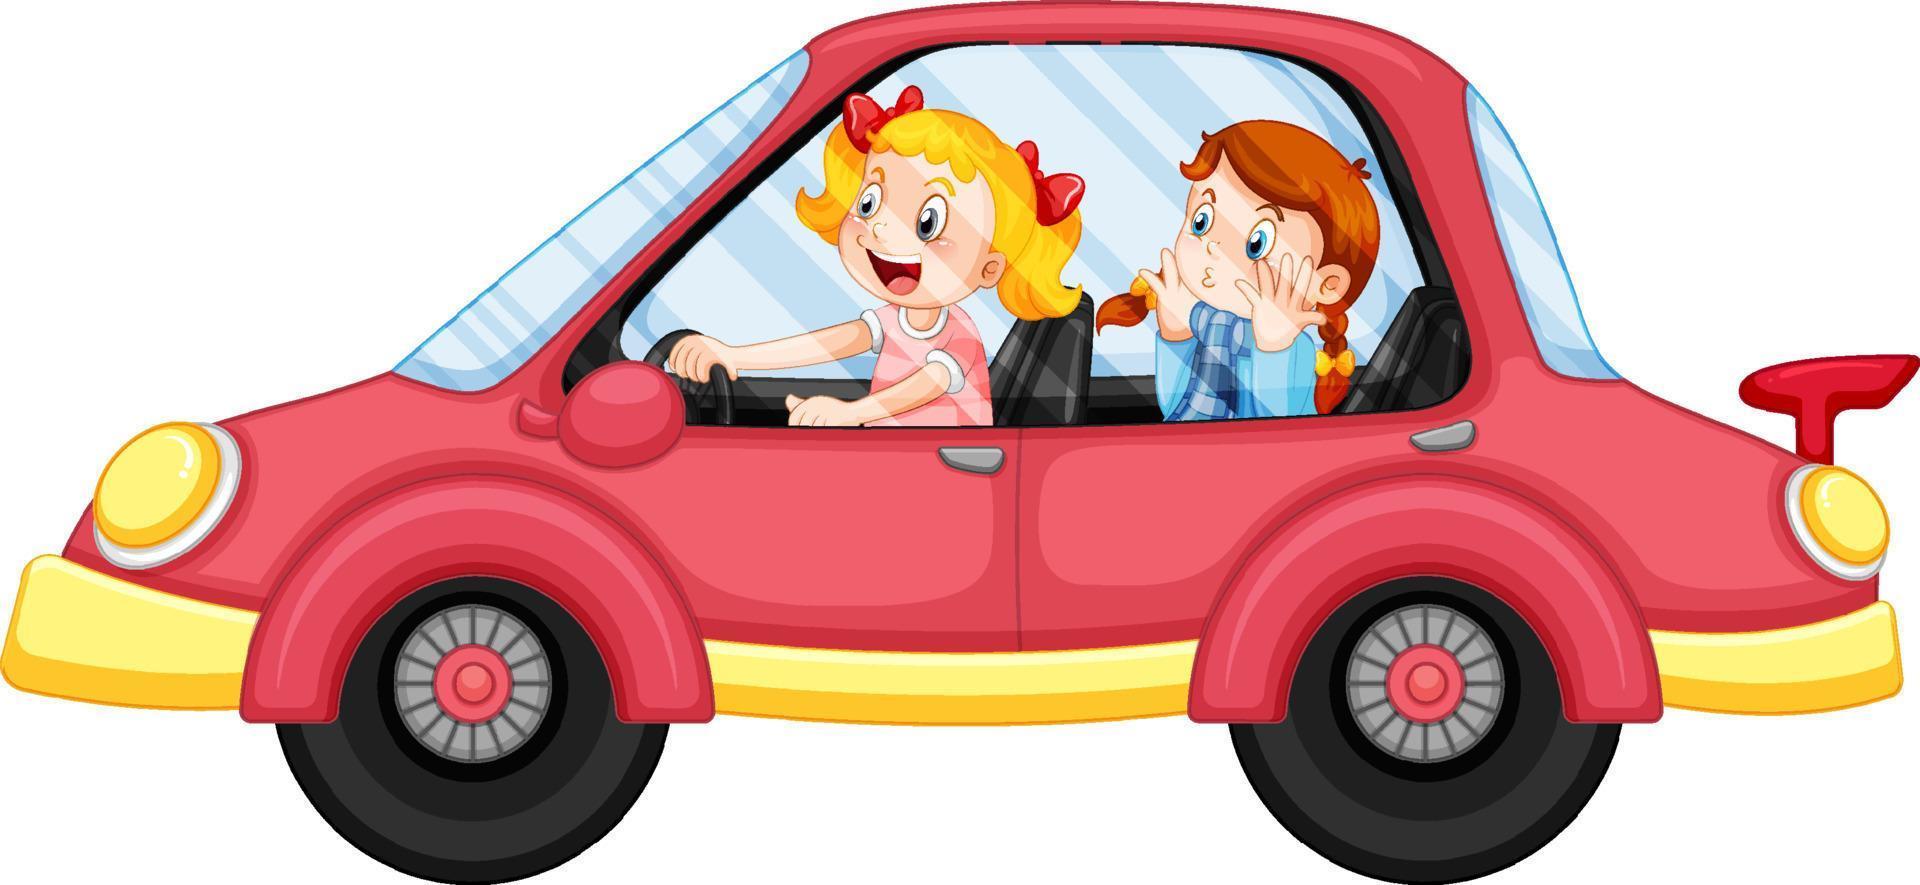 niños en un auto rojo en estilo de dibujos animados vector